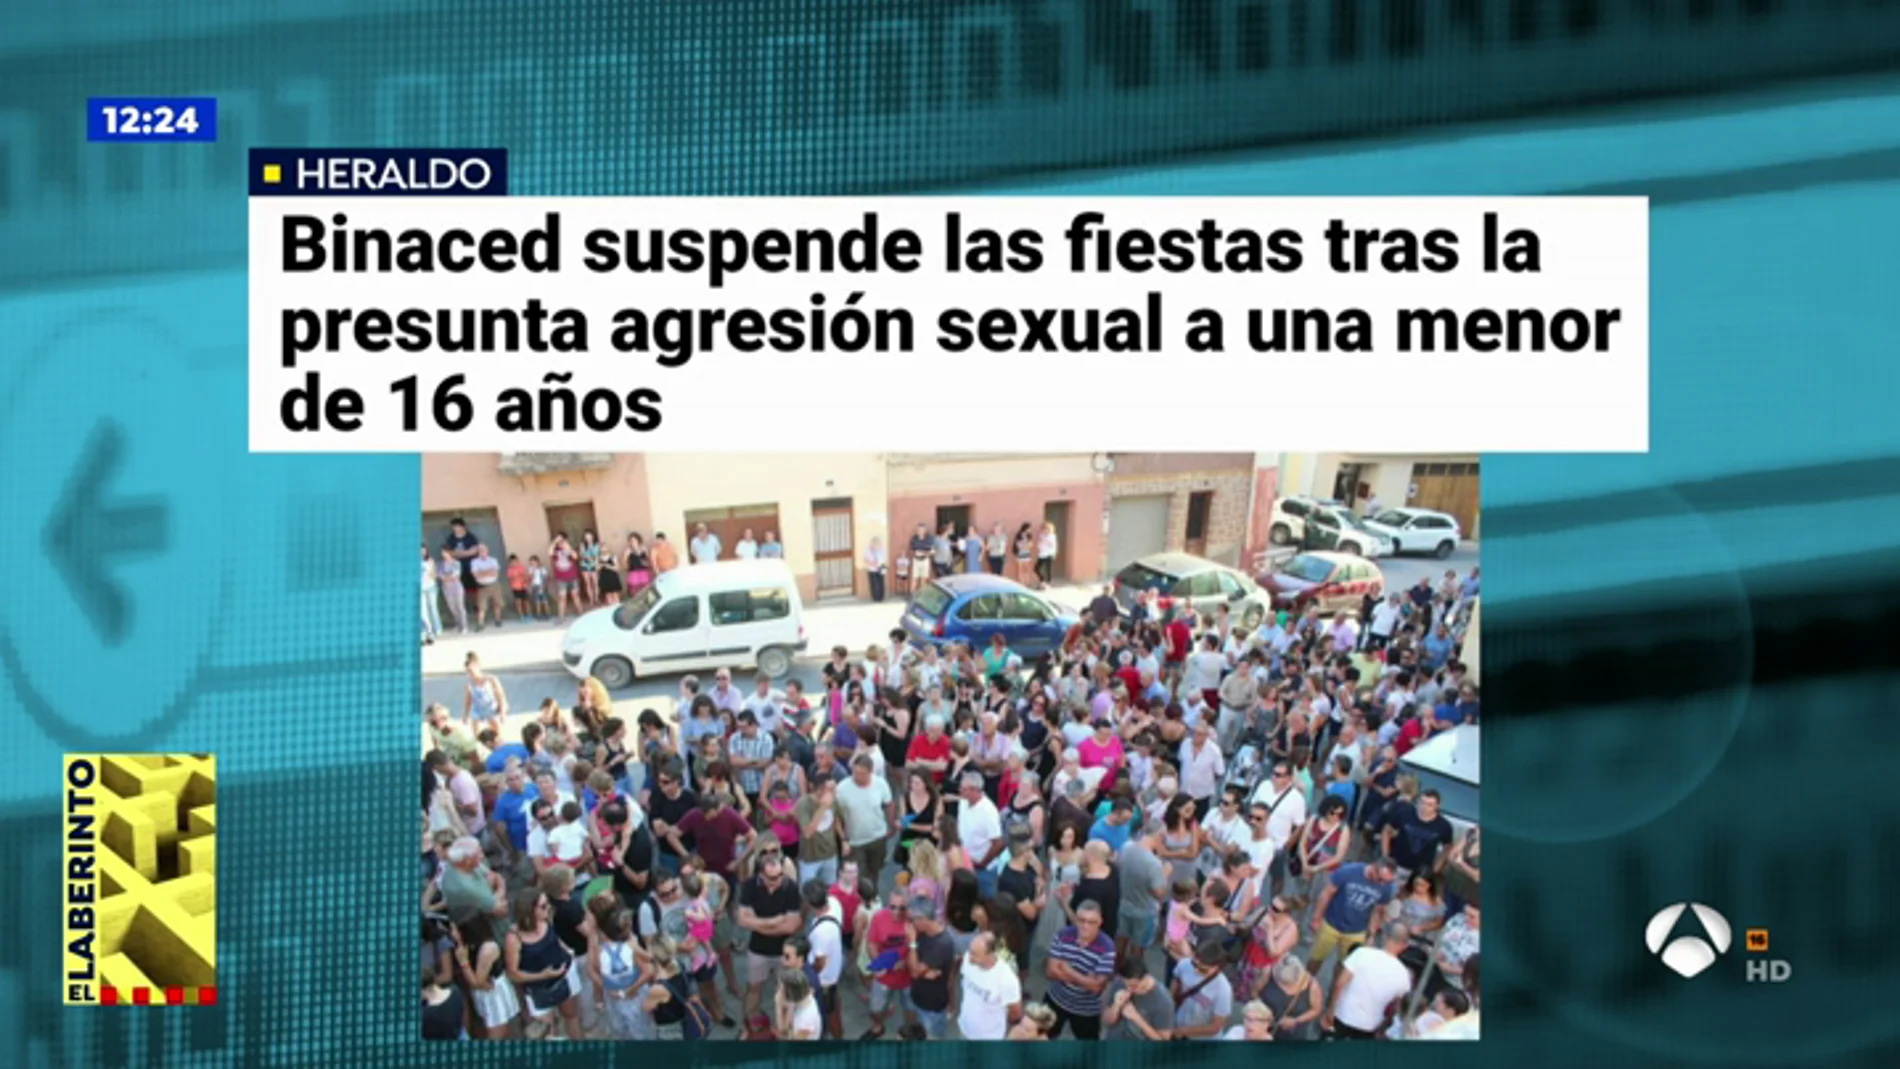 Binaced, Huesca, suspende las fiestas tras la denuncia de agresión sexual a una menor de 16 años